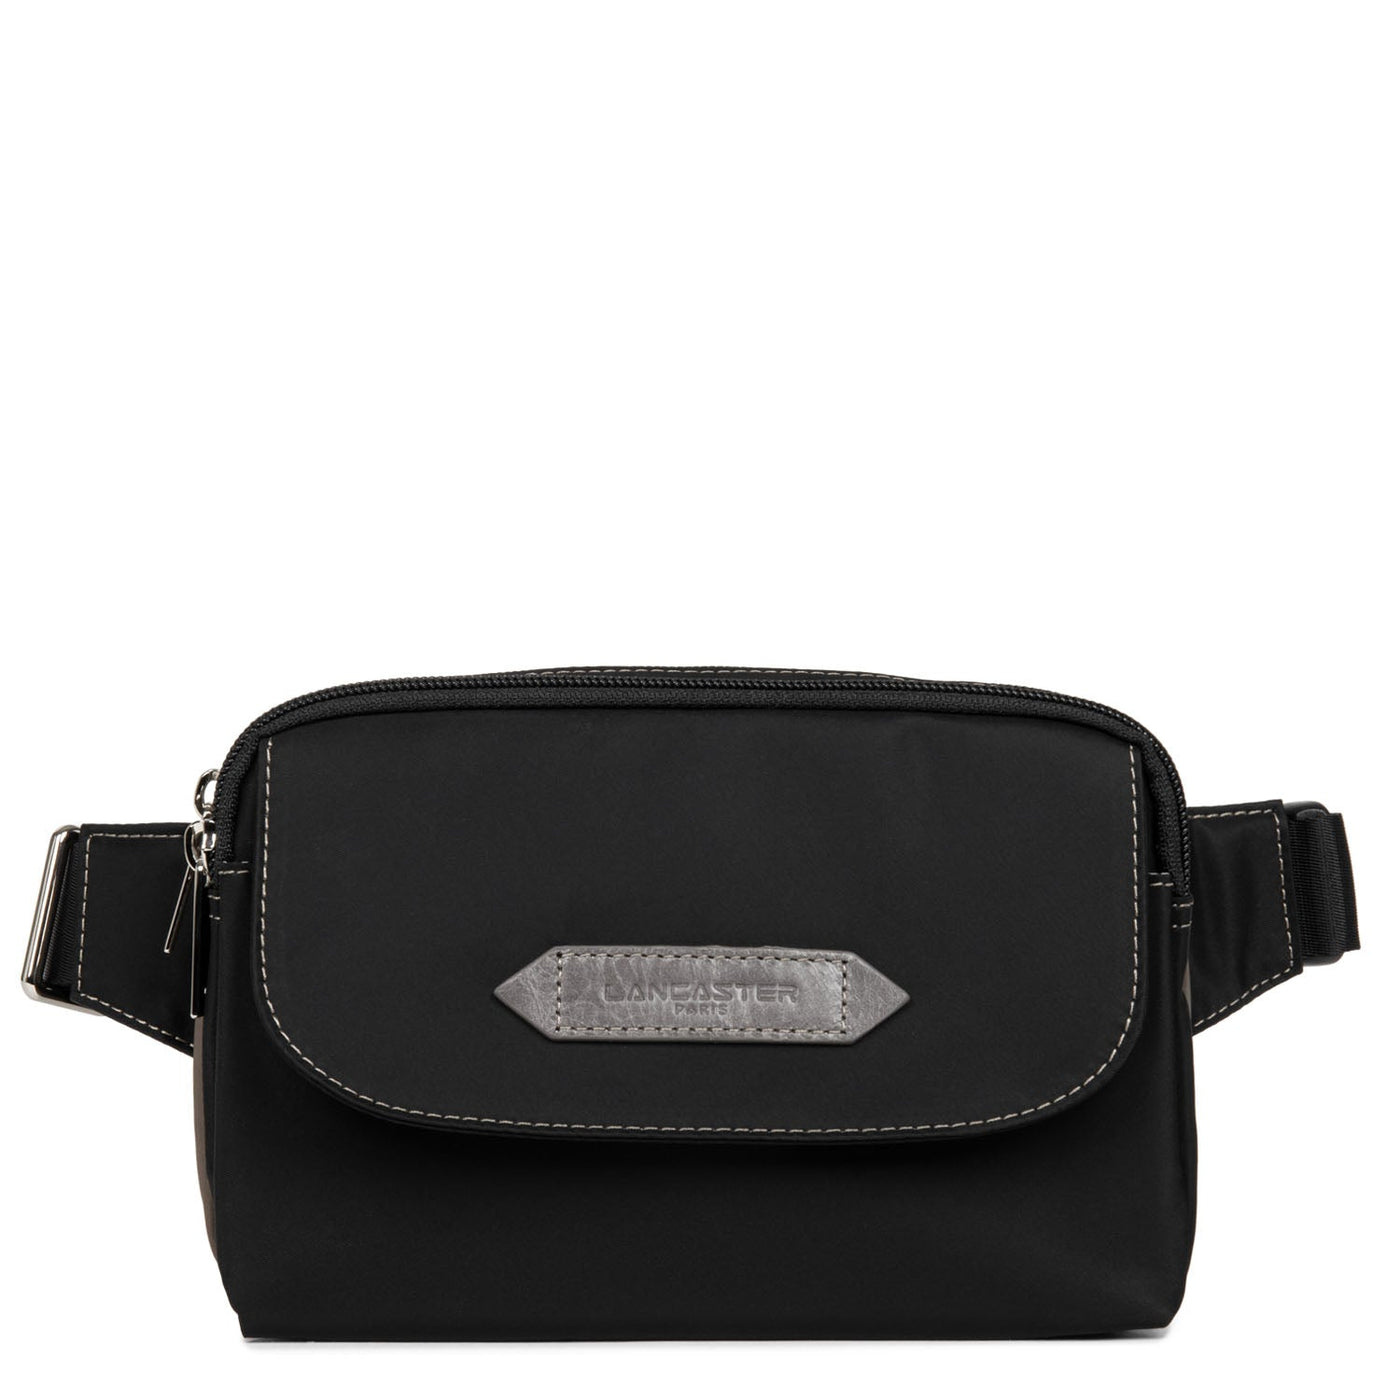 belt bag - basic sport #couleur_noir-taupe-galet